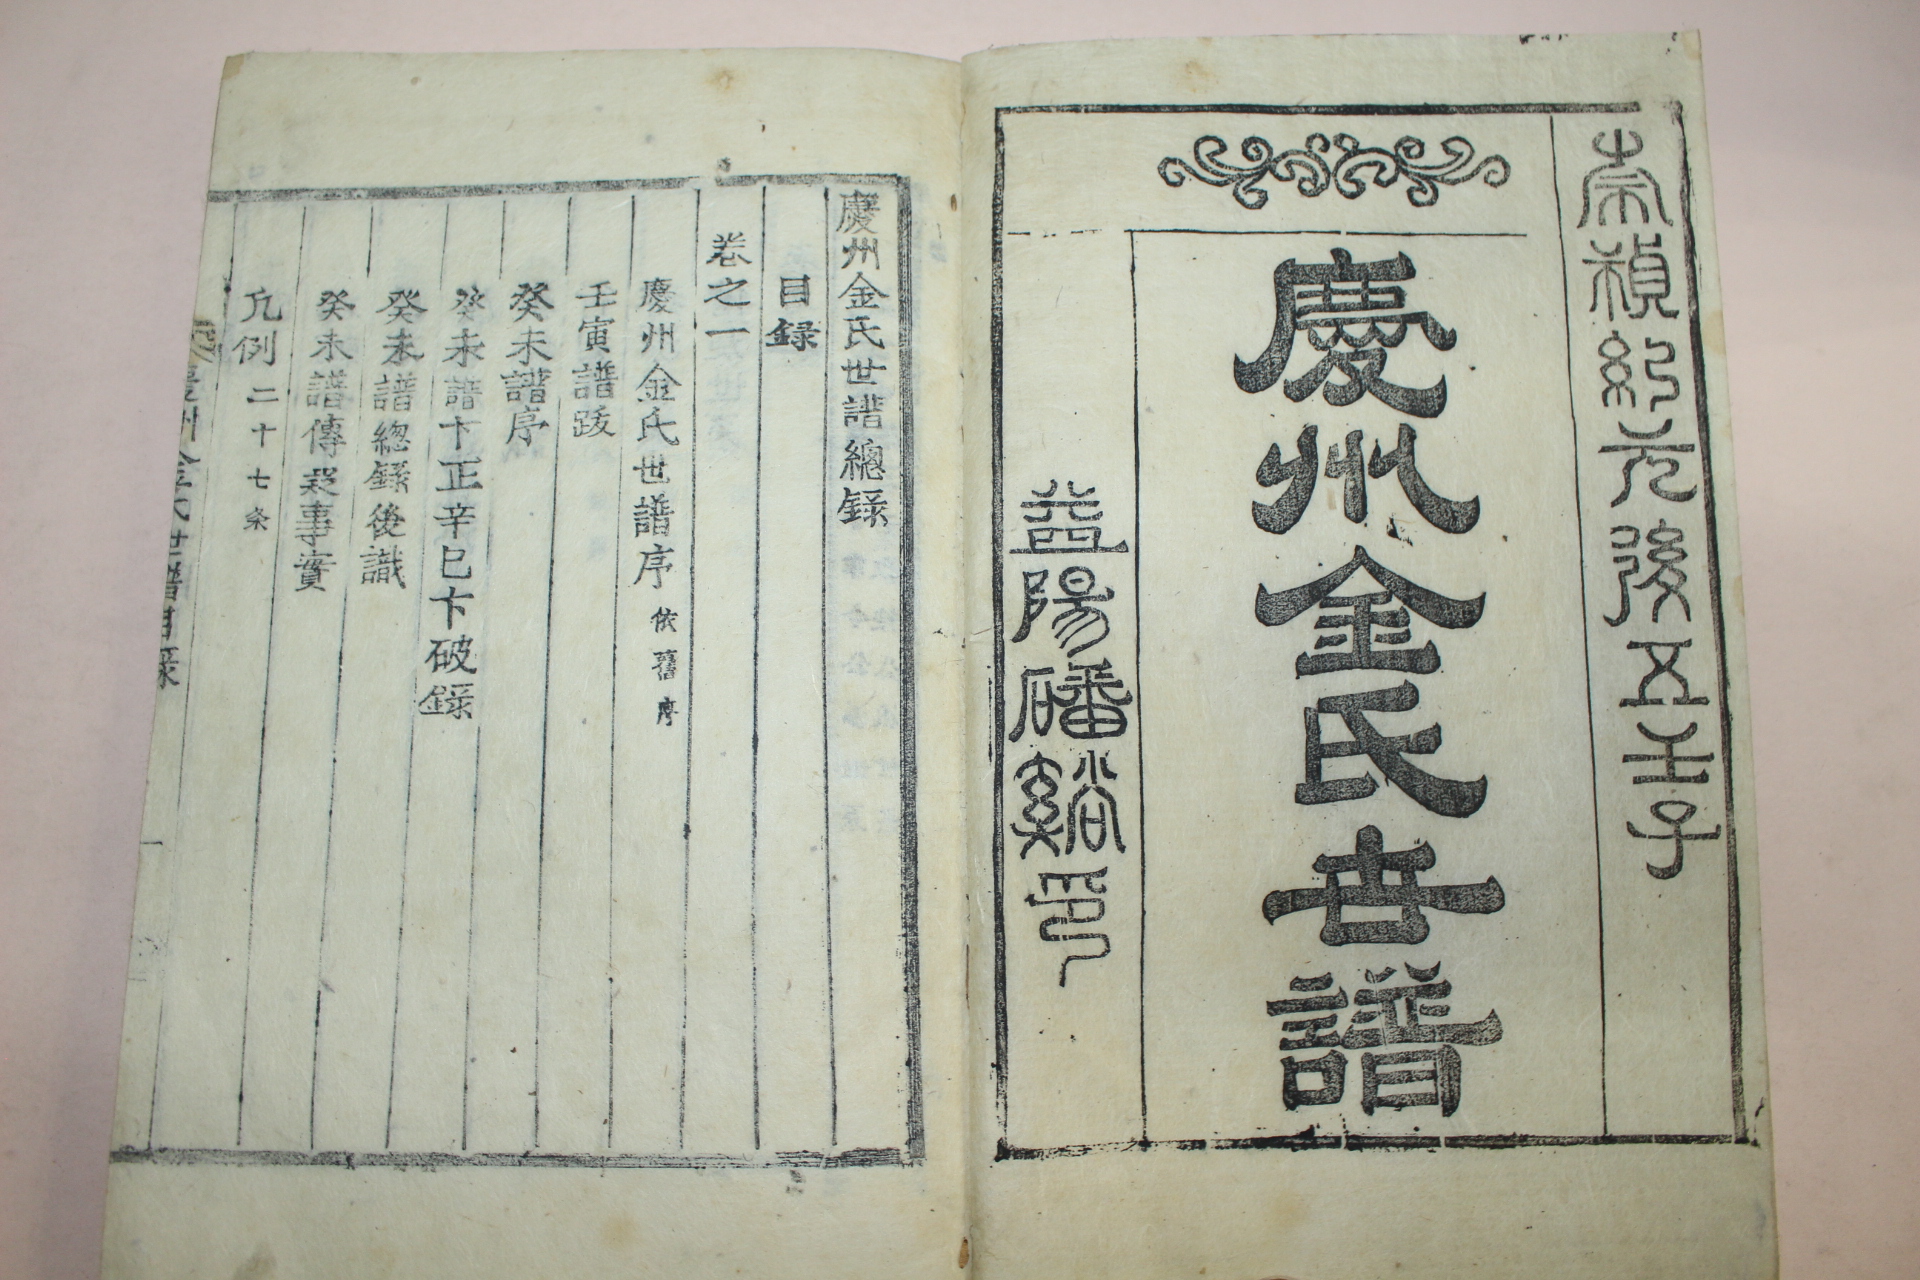 목활자본 경주김씨세보(慶州金氏族譜) 6책완질